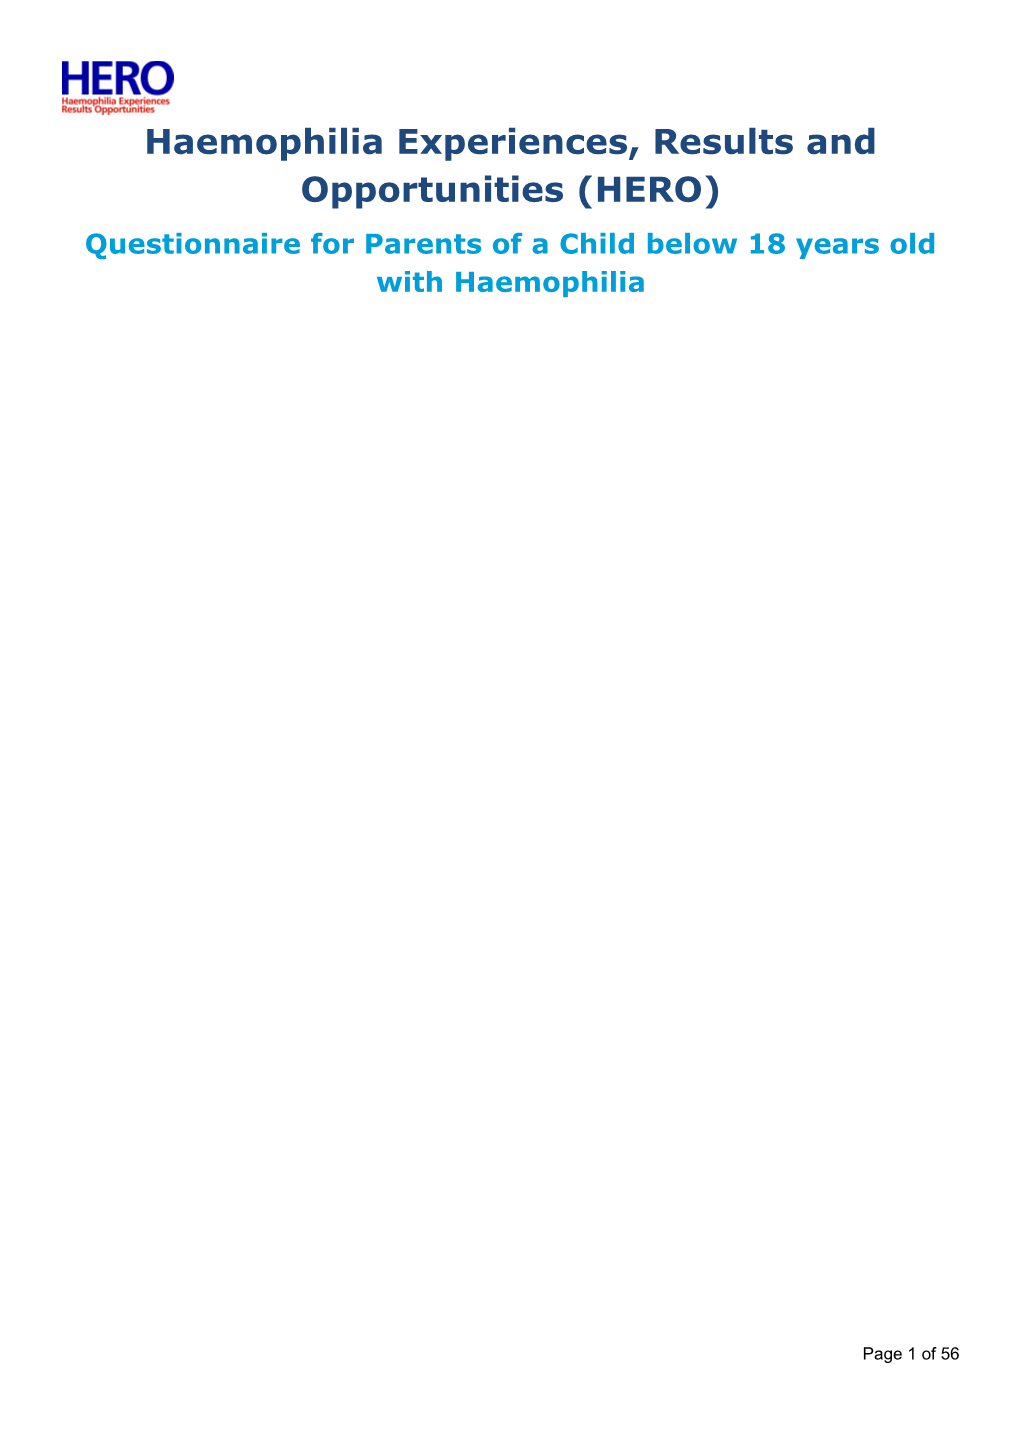 HERO Parent Questionnaire